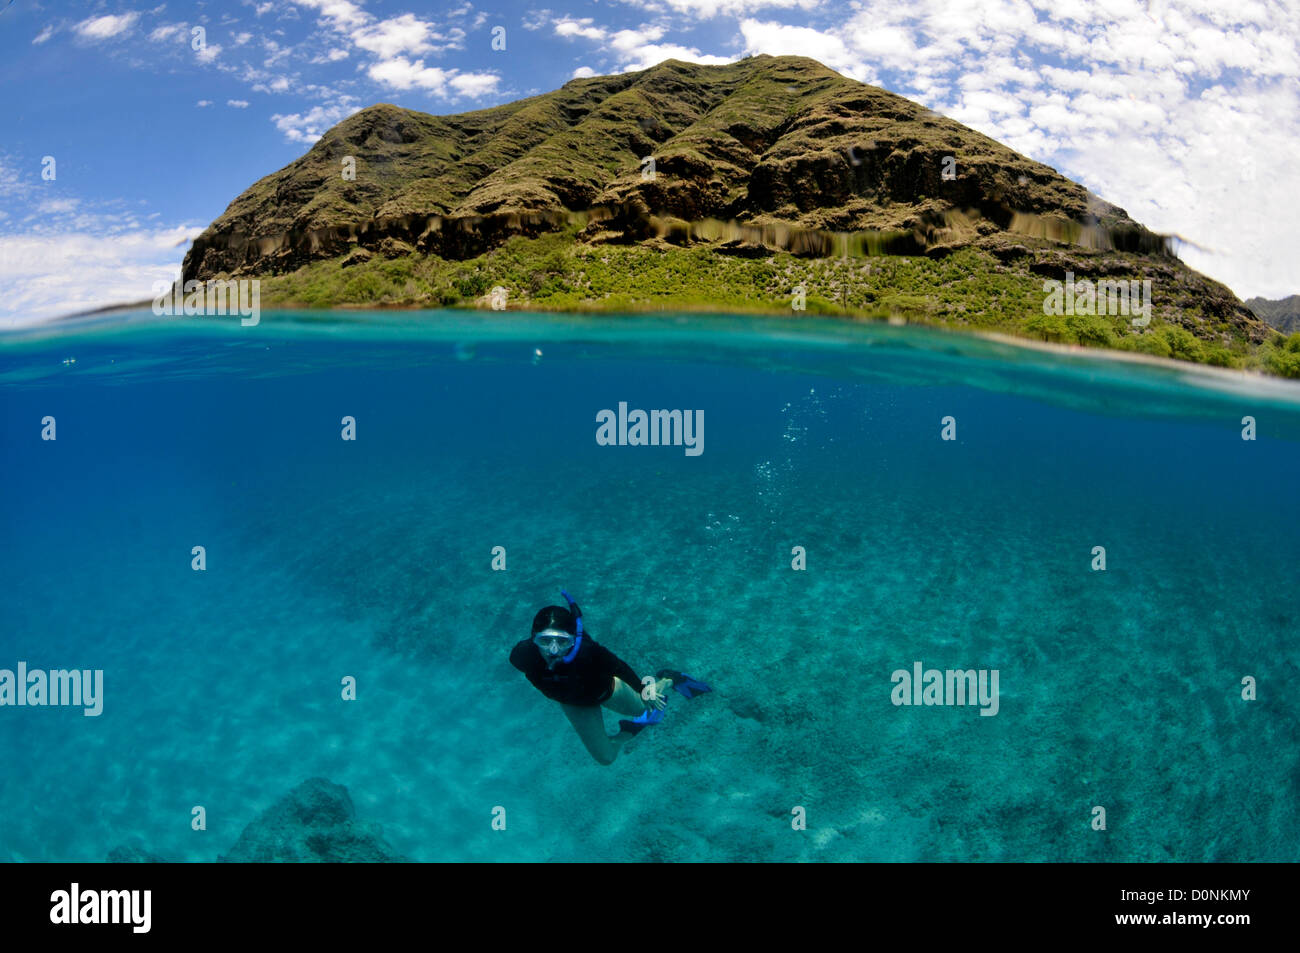 Split image of snorkeler and coastal hill, Makua Beach, Oahu, Hawaii, USA Stock Photo